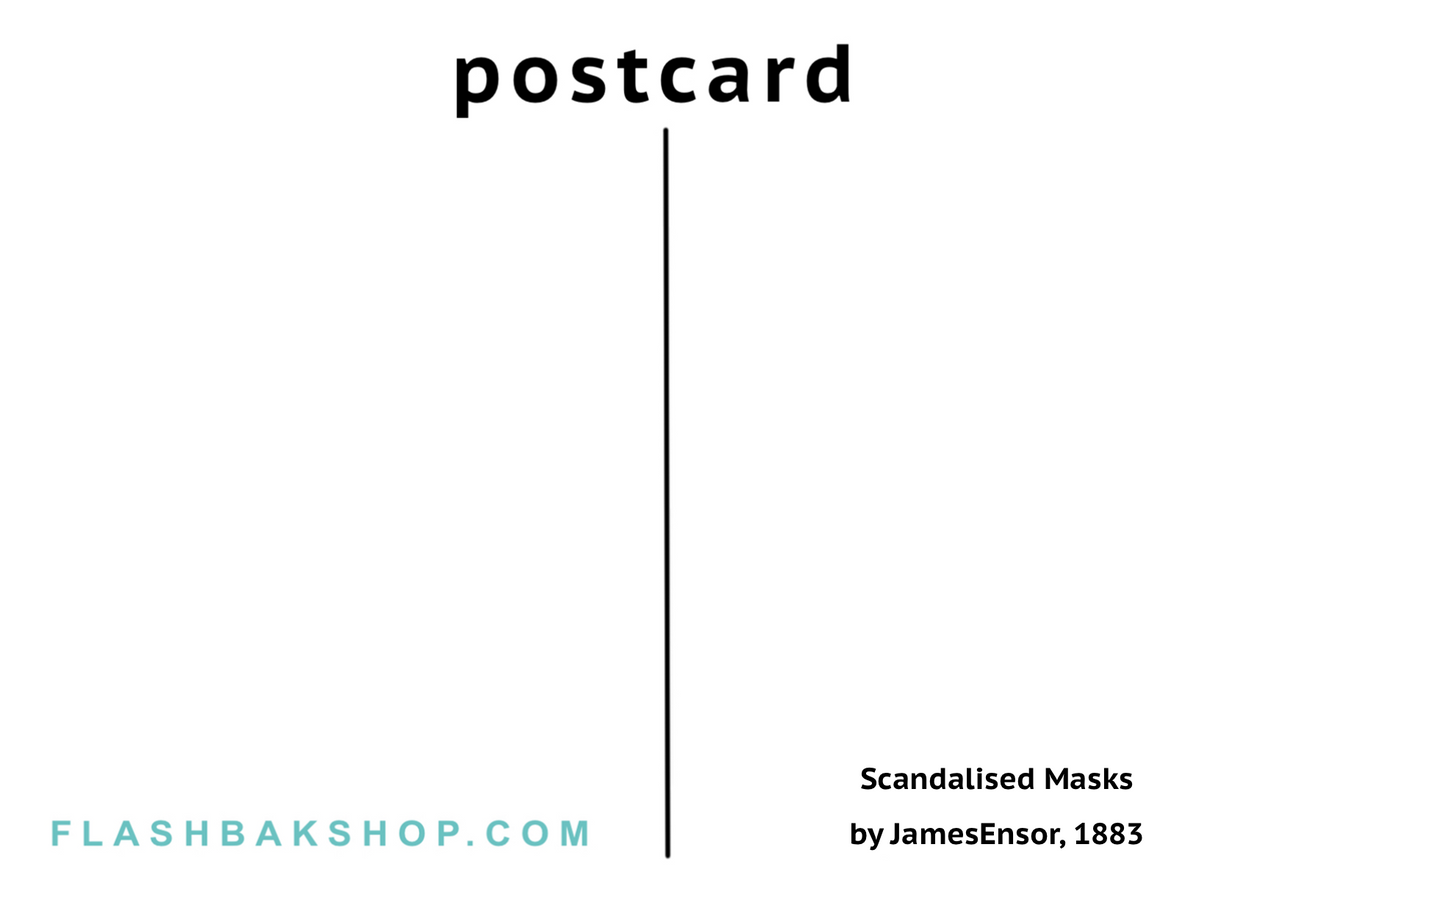 Masques scandalisés par James Ensor, 1883 - Carte postale